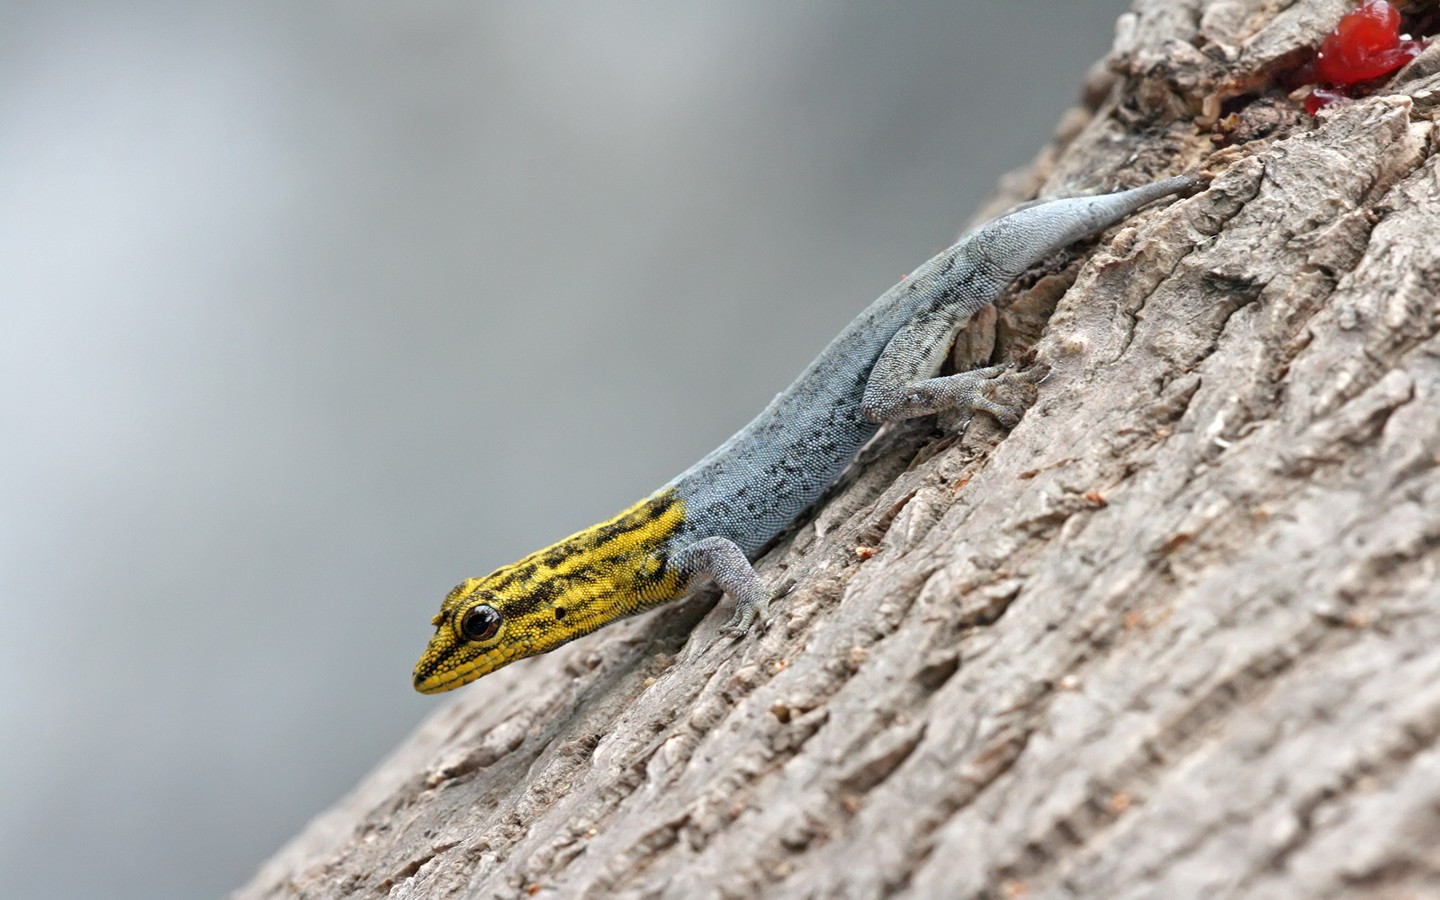 Yellow Headed Dwarf Gecko